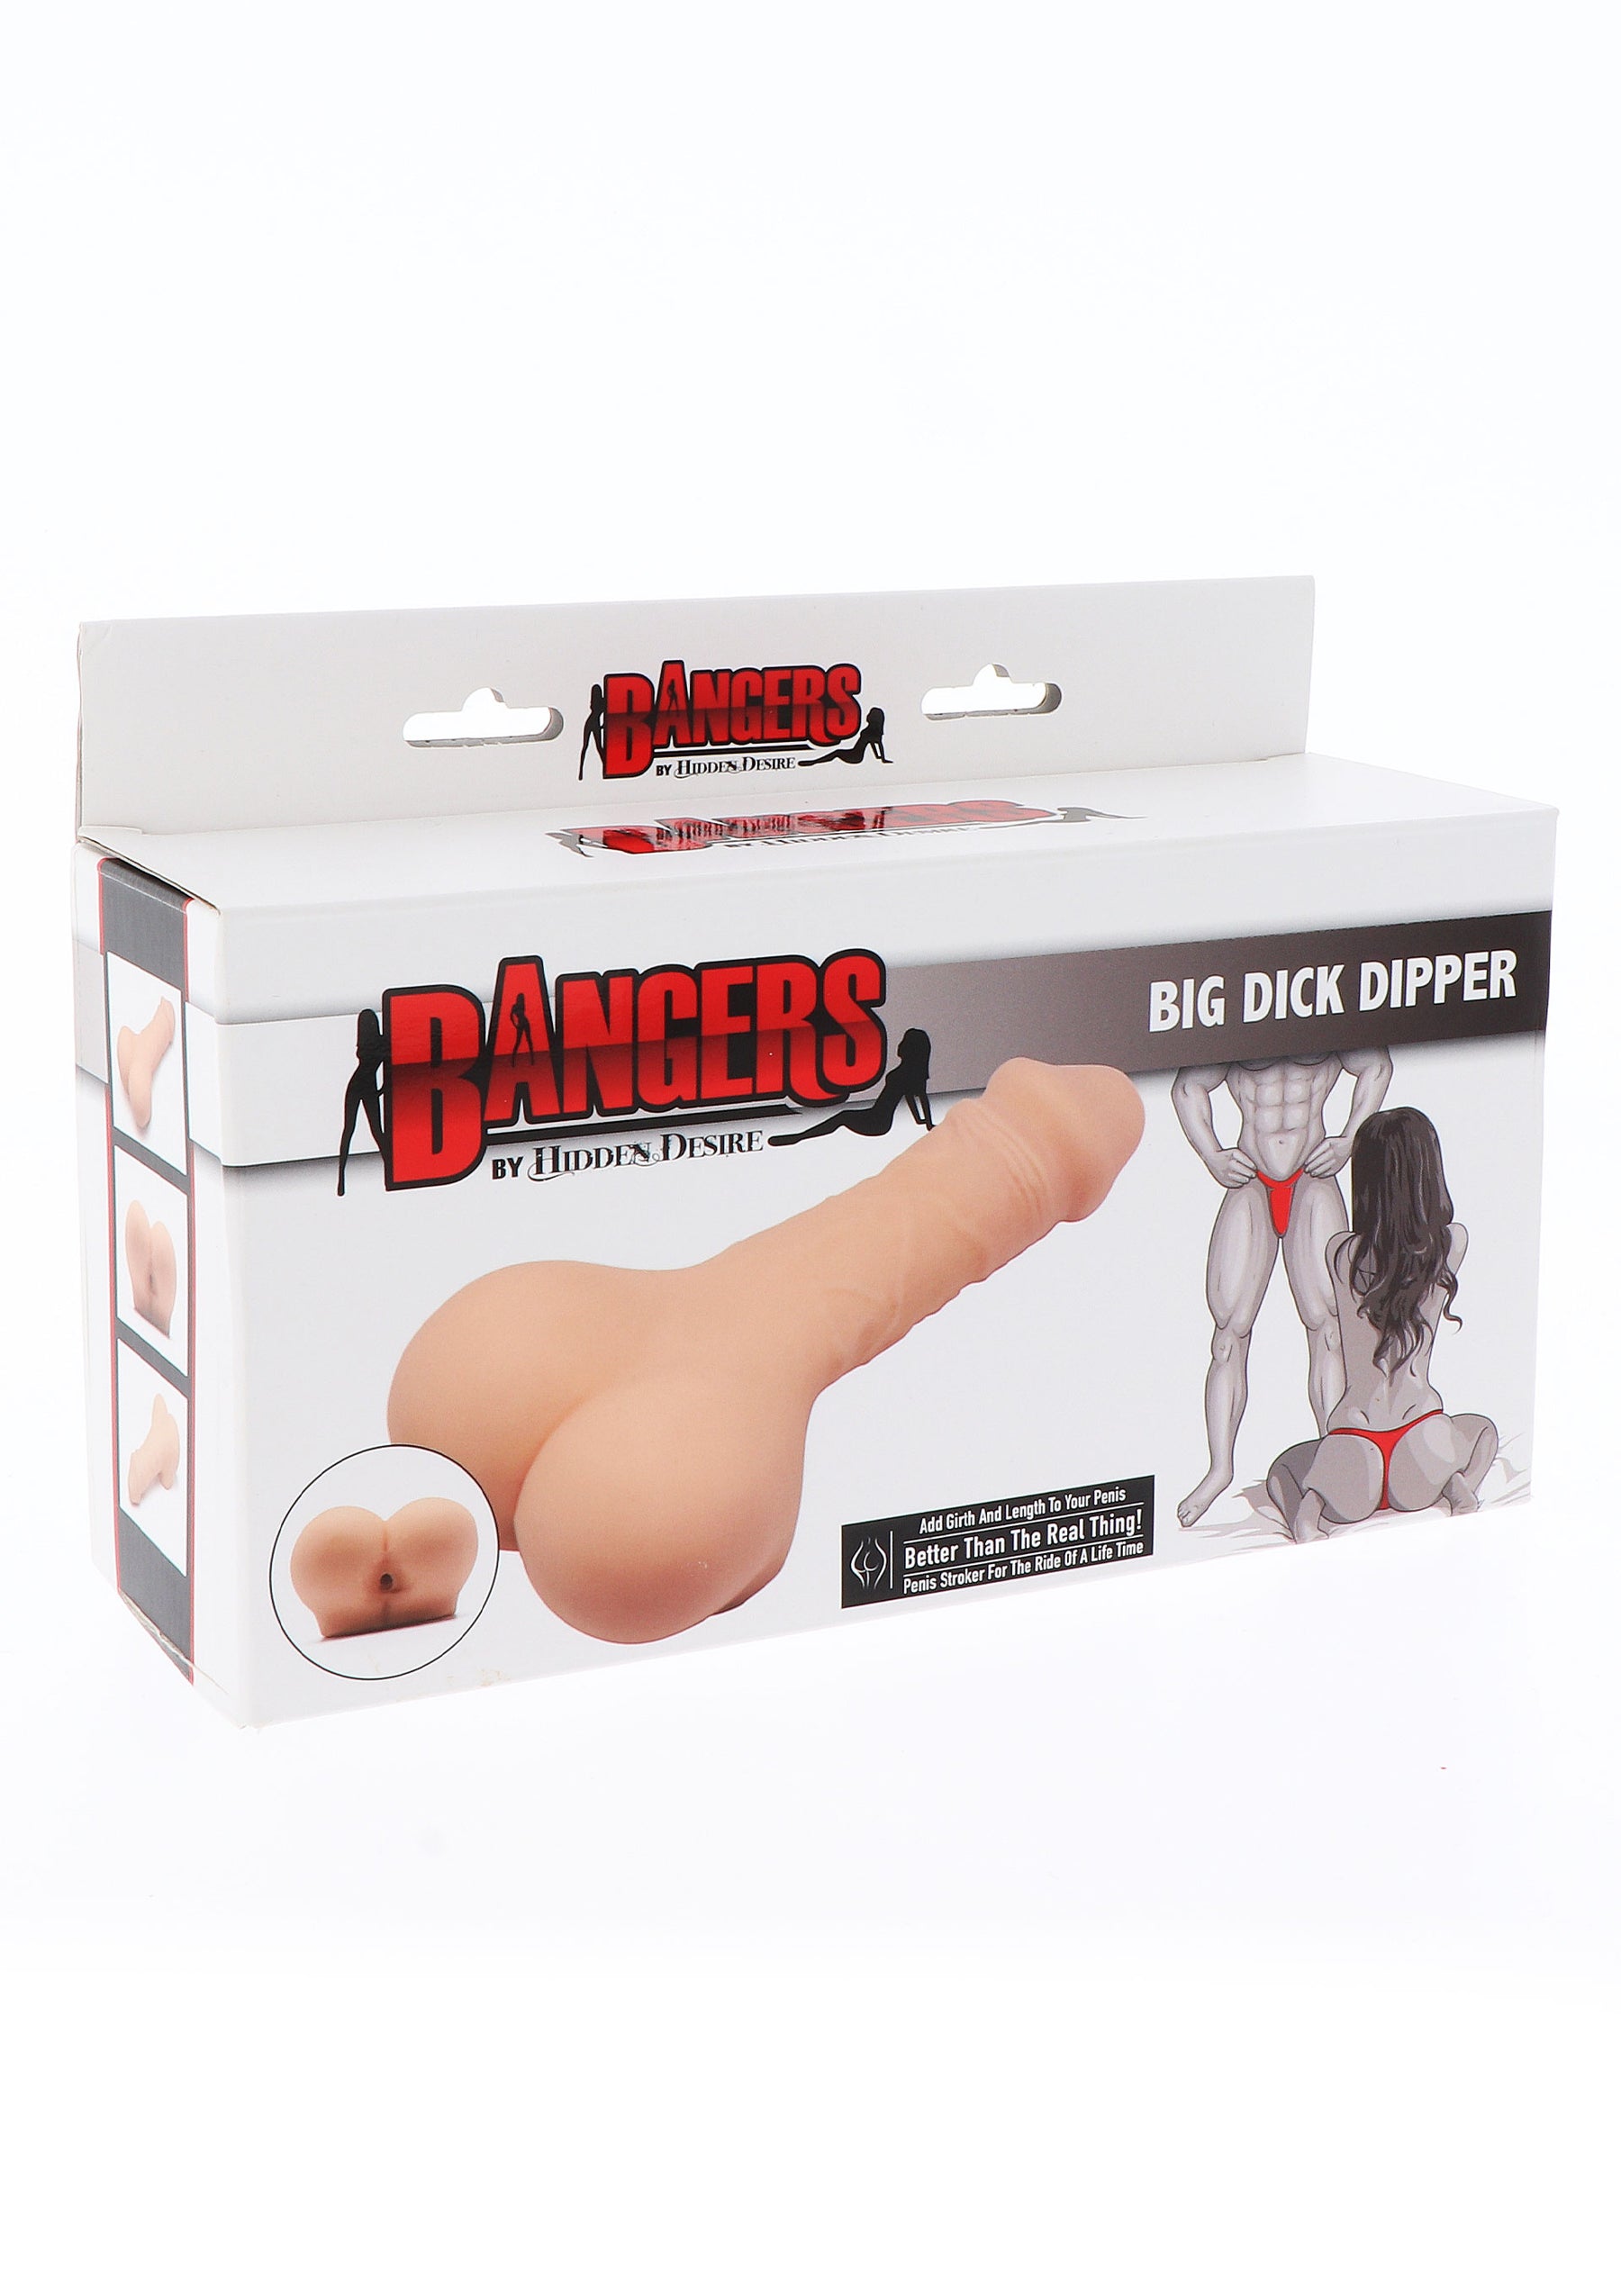 Big Dick Dipper